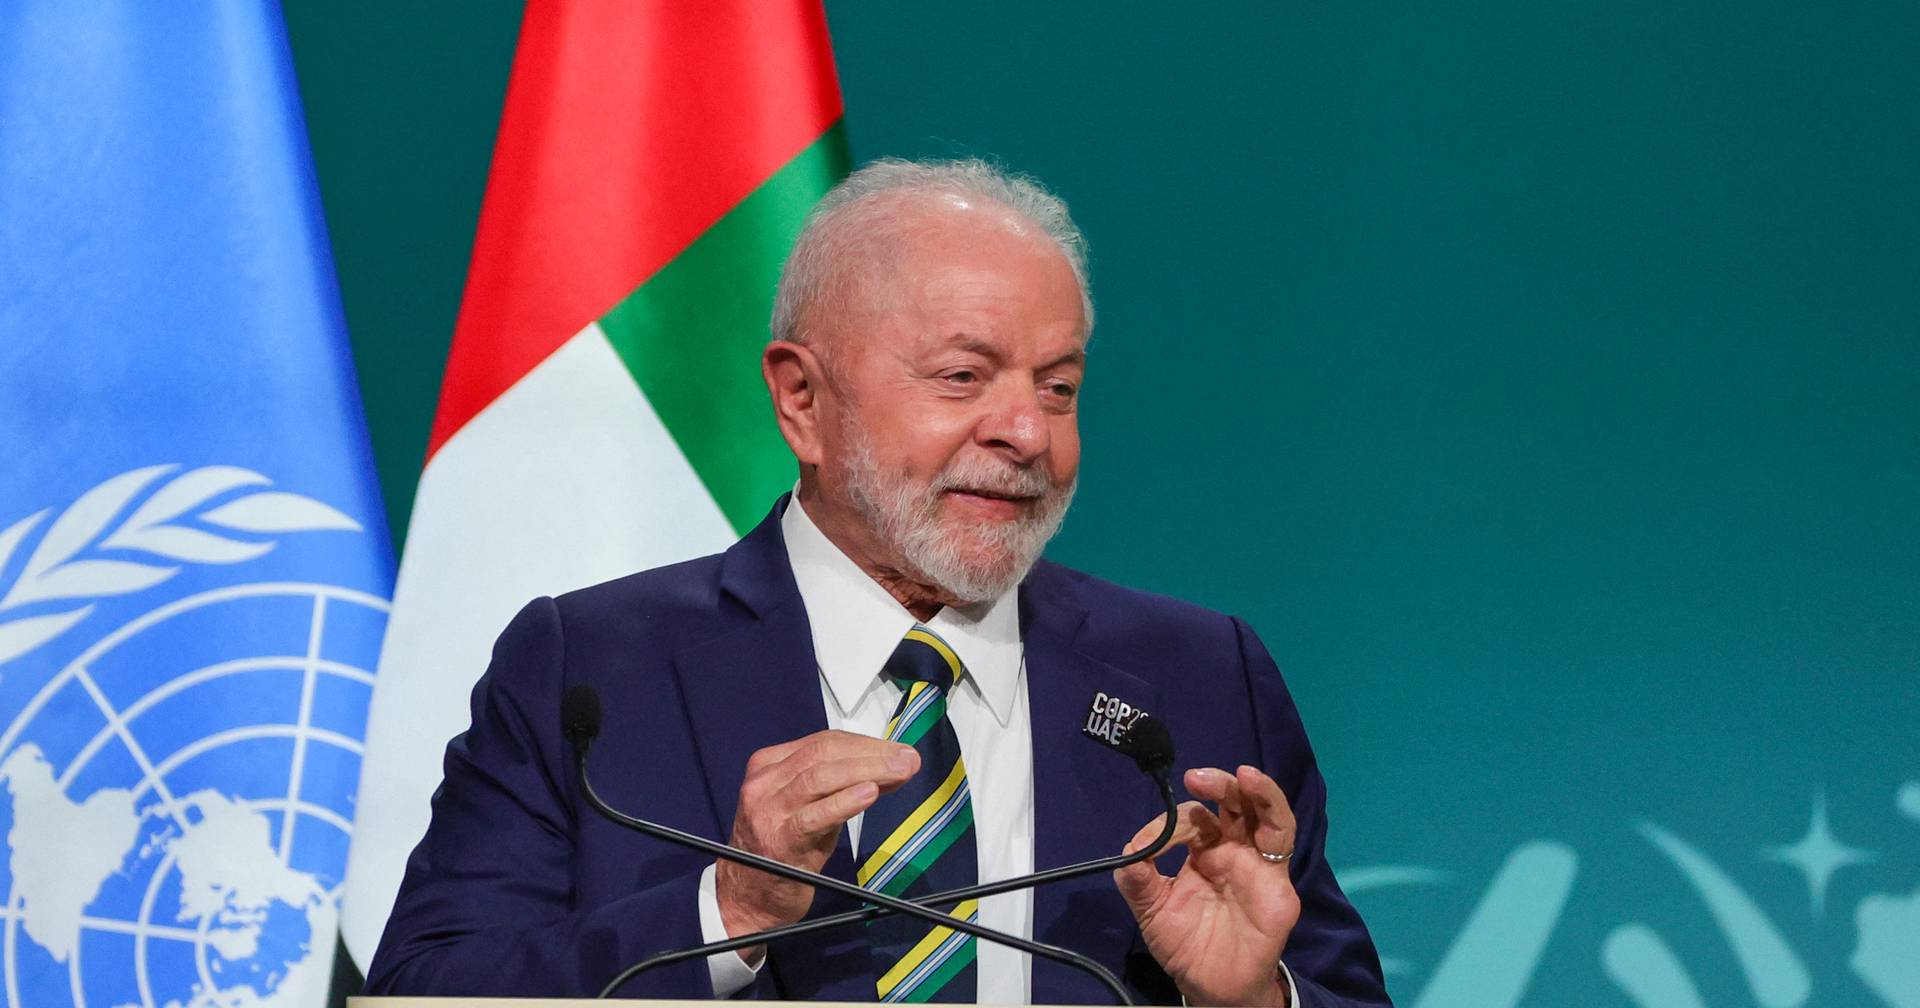 Lula da Silva na cimeira do clima: “O planeta está farto de discursos  eloquentes e vazios” sobre as mudanças climáticas - Expresso